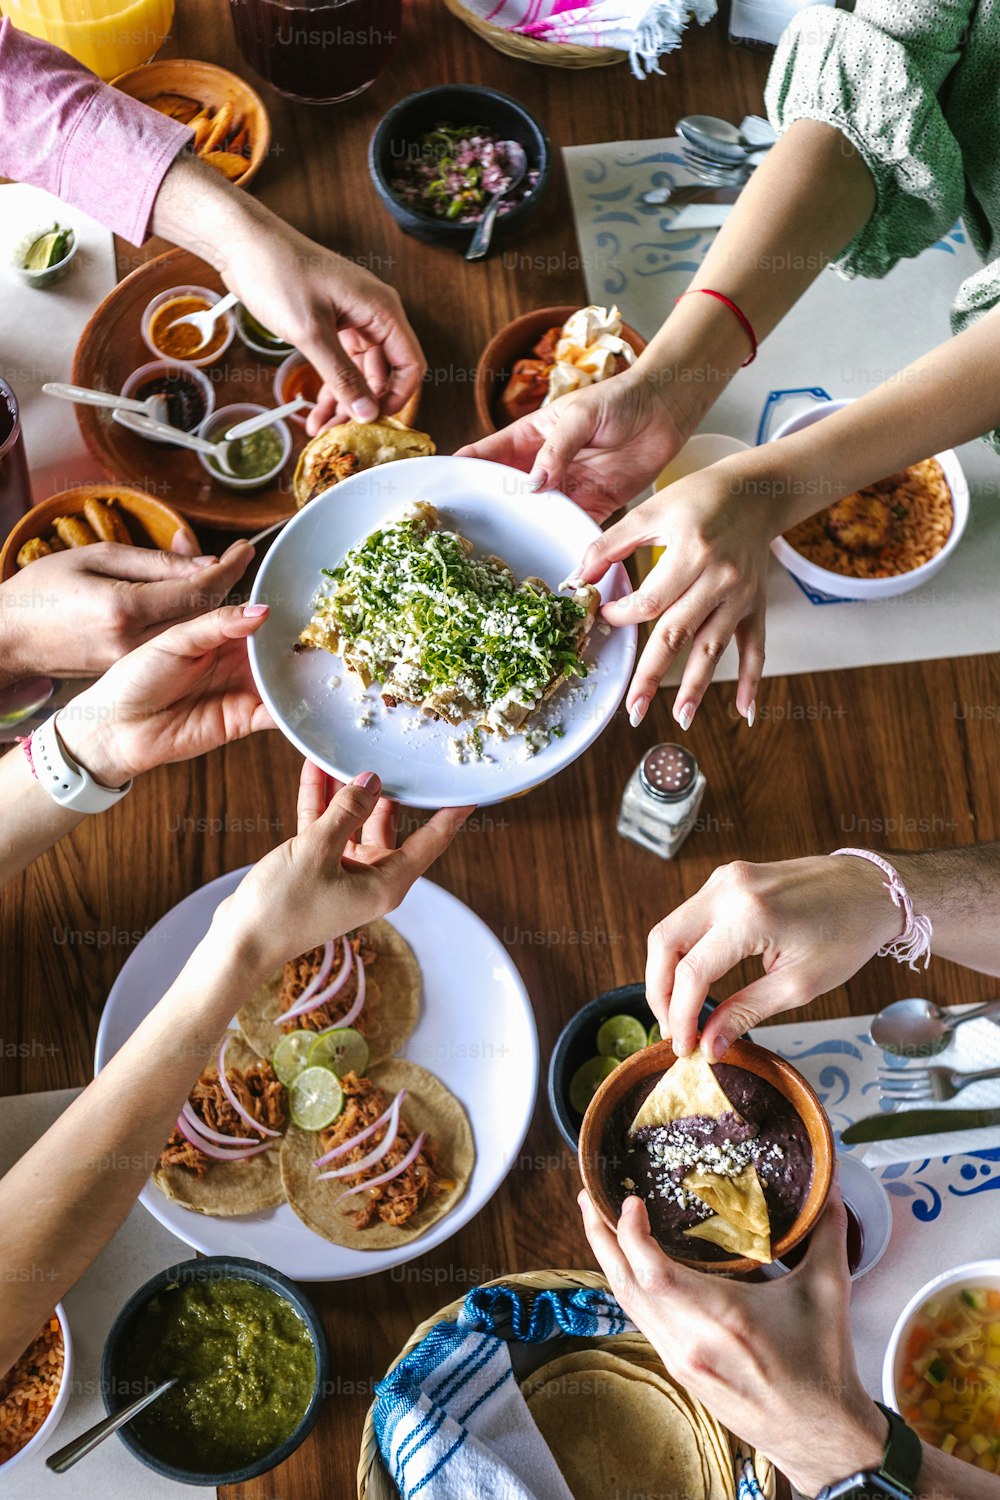 gruppo di amici latini che mangiano tacos messicani e cibo tradizionale, spuntini e persone mani sopra il tavolo, vista dall'alto. Cucina messicana America Latina